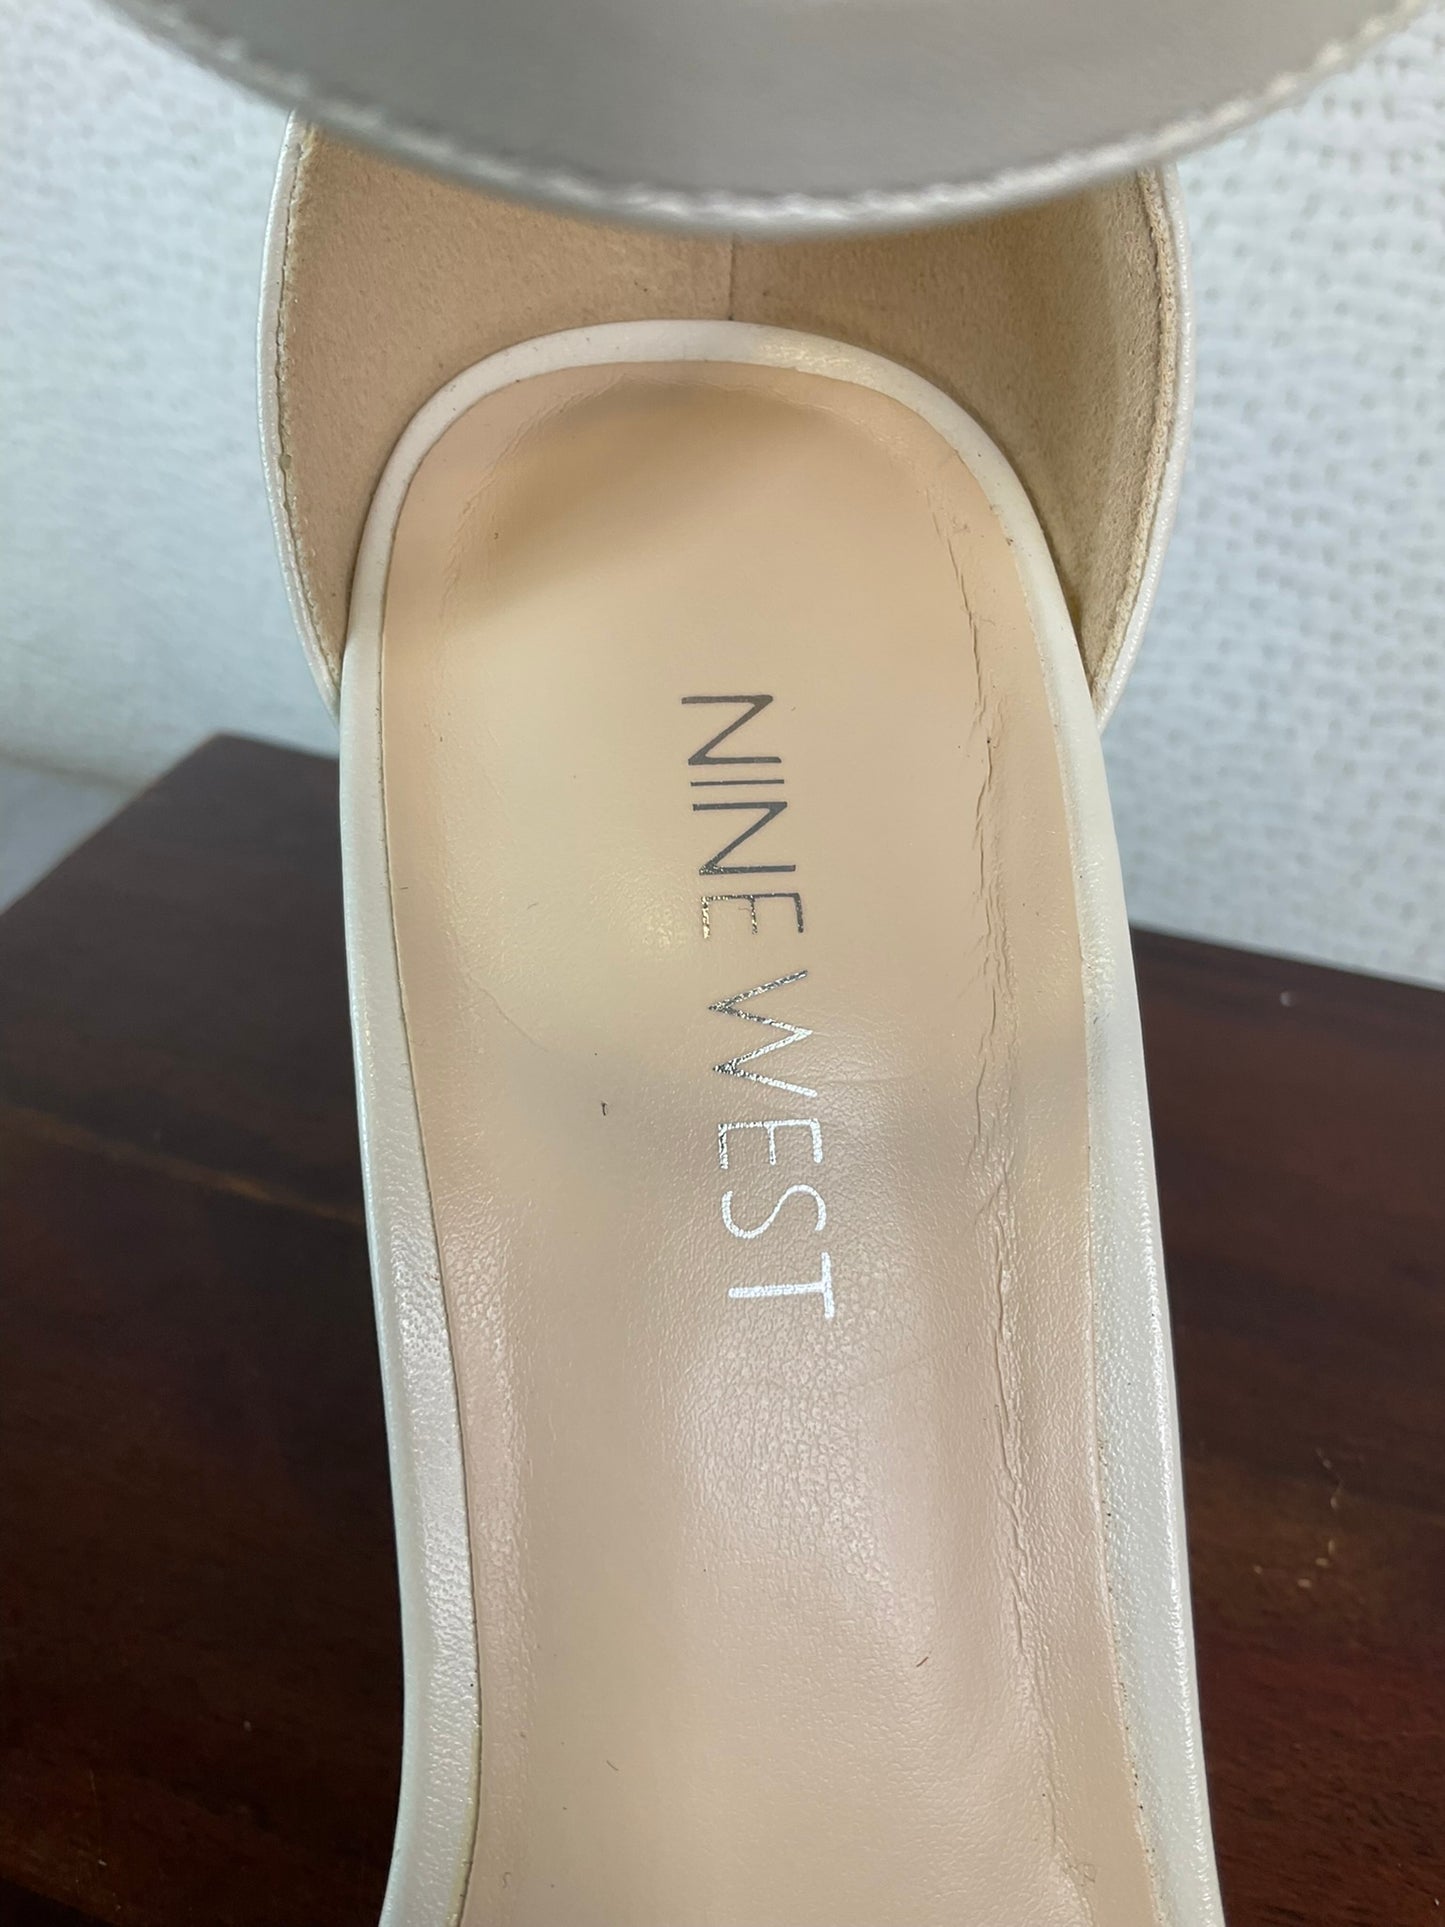 Nine West Mindful Ankle Strap Sandals, Size 7 M